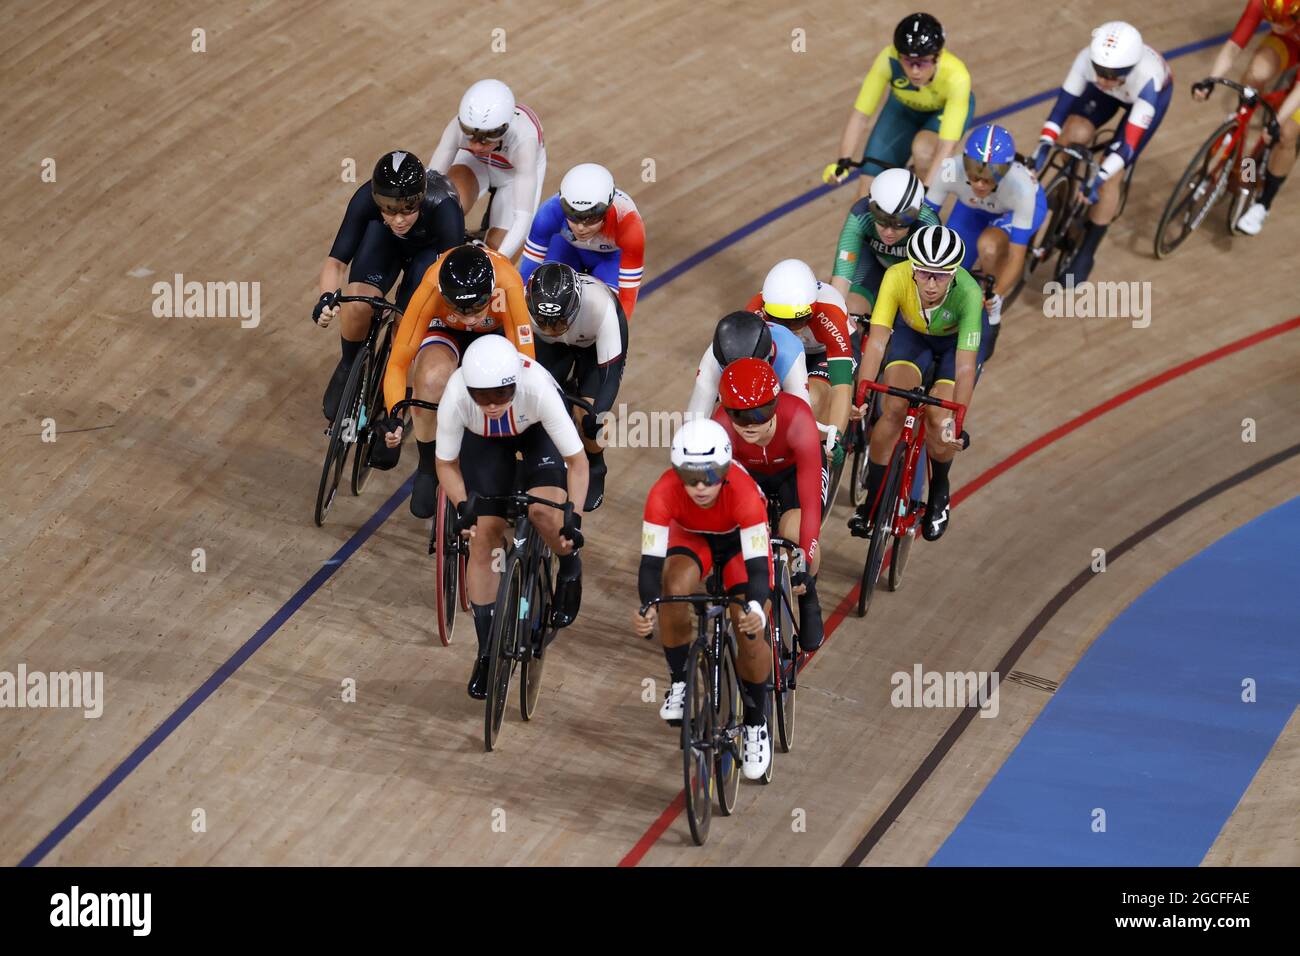 Illustration während der Olympischen Spiele Tokio 2020, Radweg Frauen Omnium Point Race am 8. August 2021 auf dem Izu Velodrome in Izu, Japan - Foto Foto Kishimoto / DPPI Stockfoto